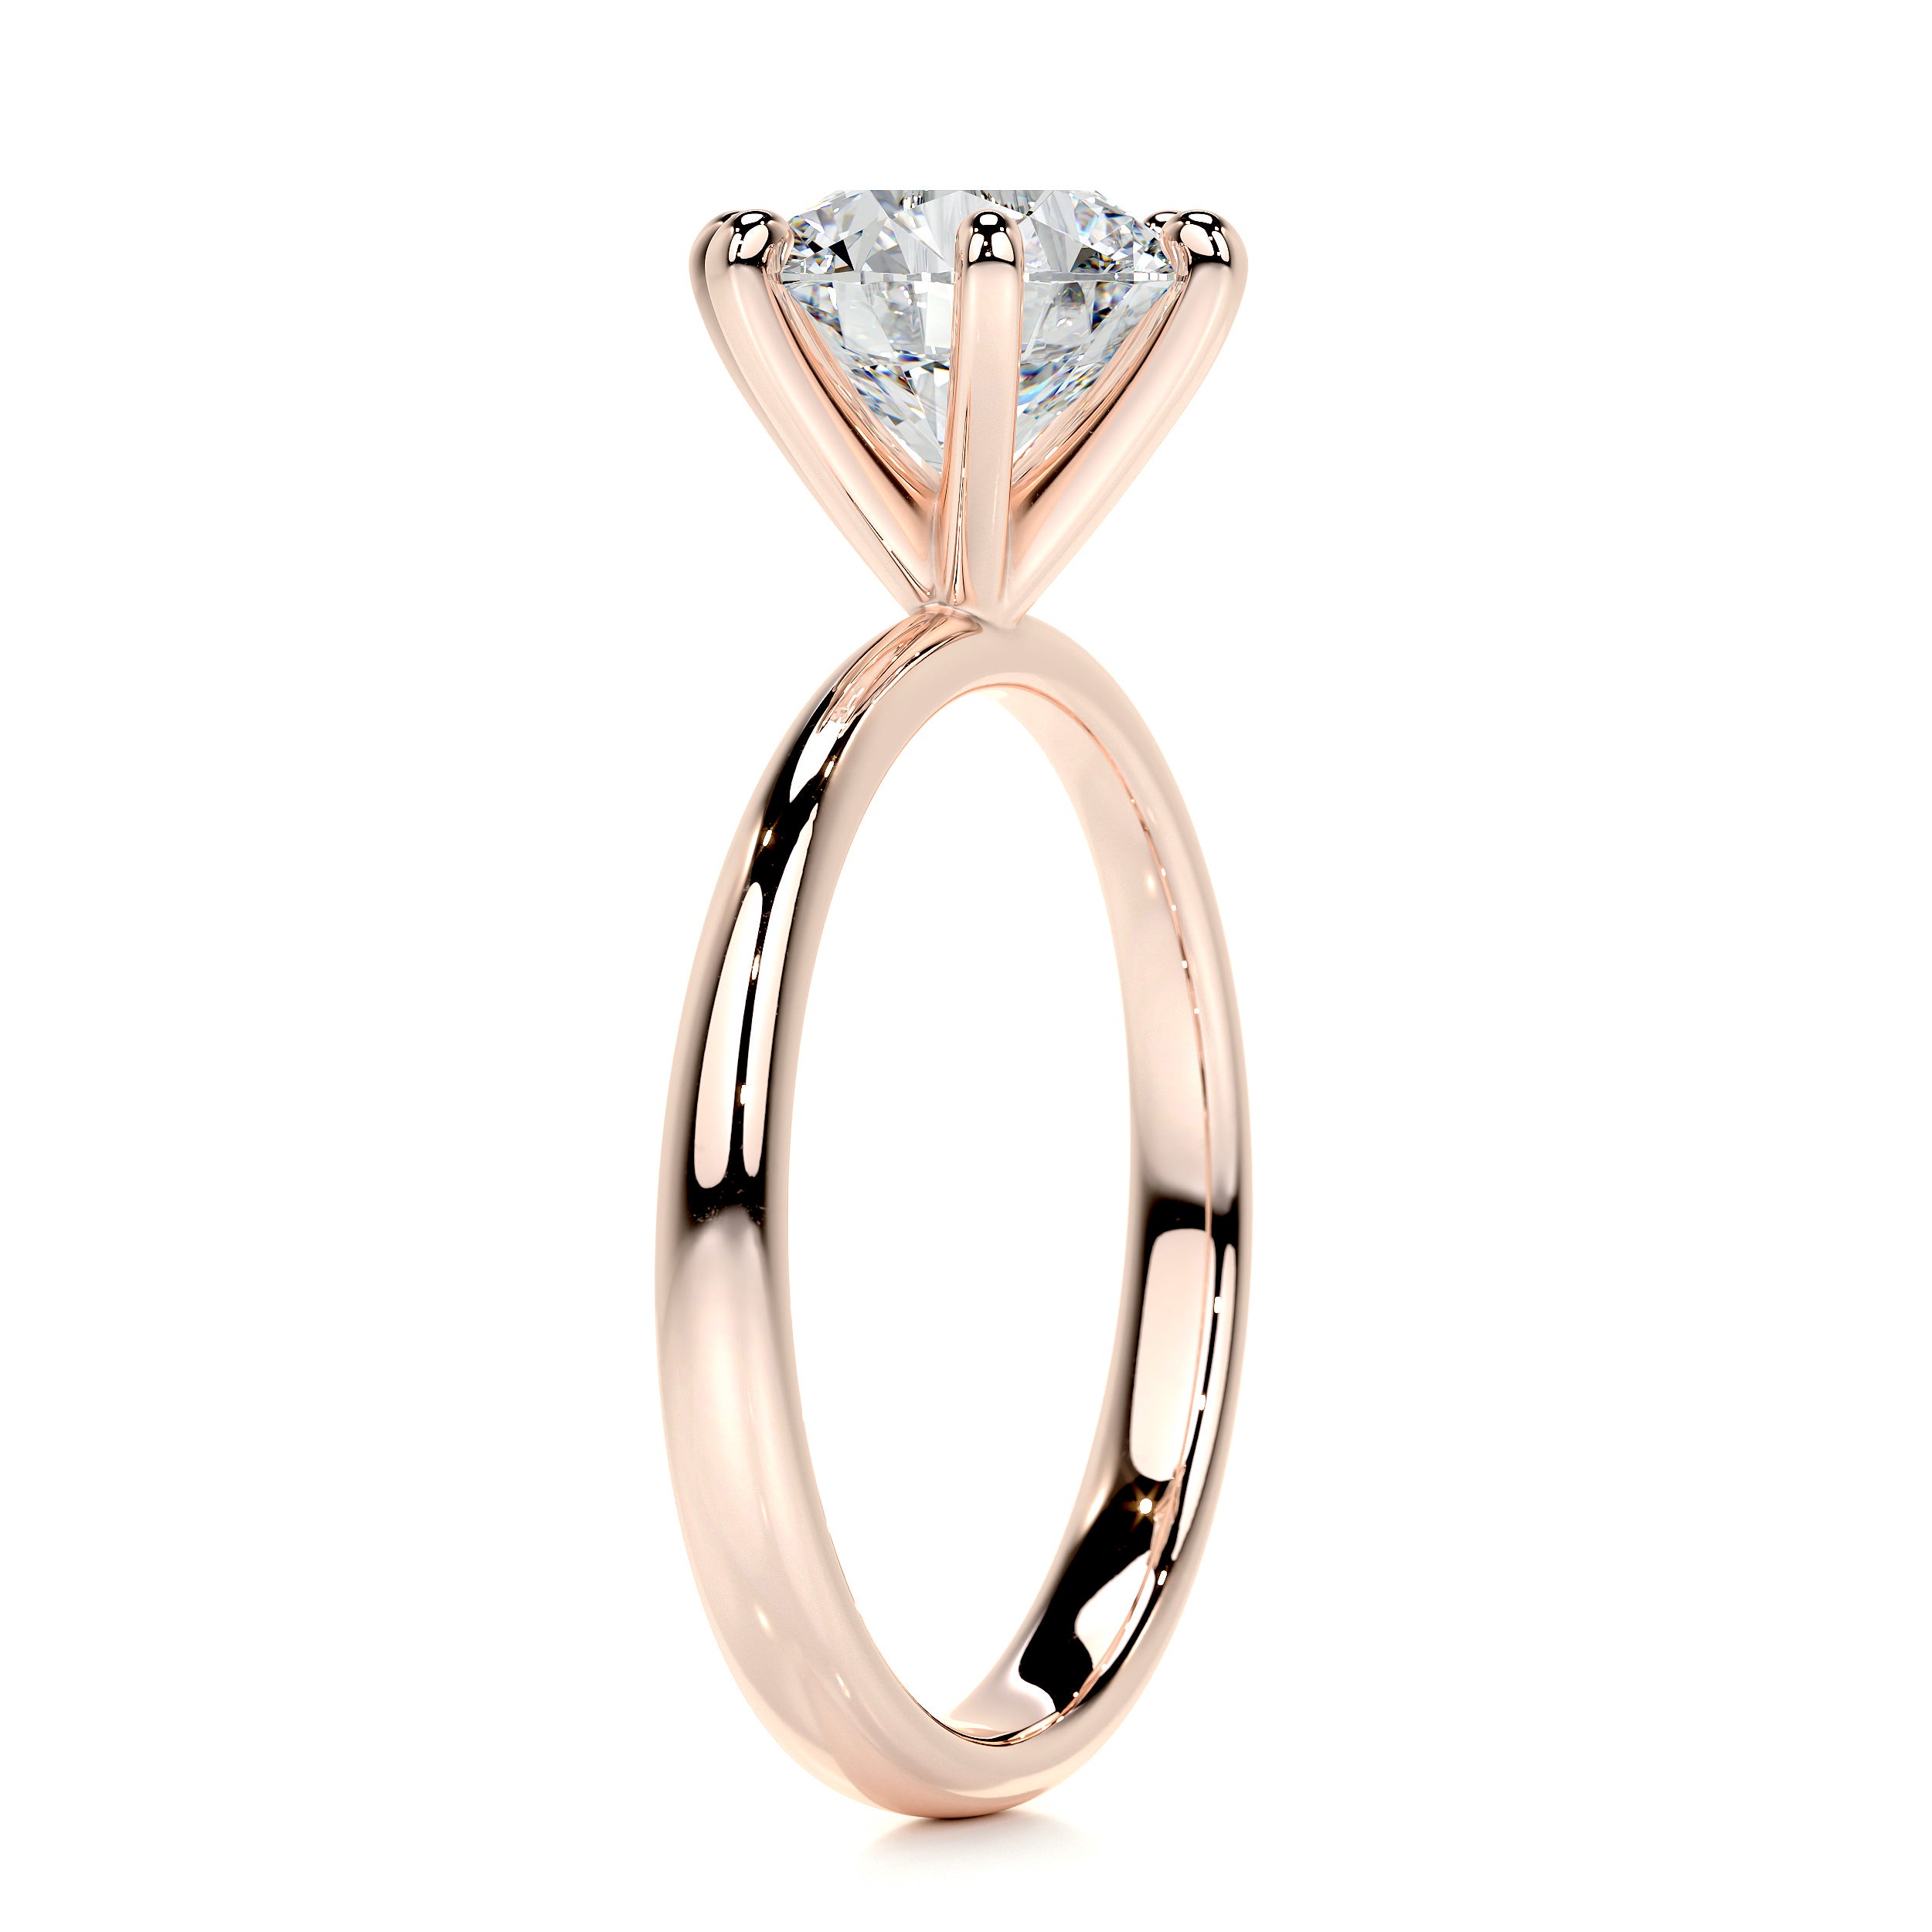 Samantha Diamond Engagement Ring   (2 Carat) -14K Rose Gold